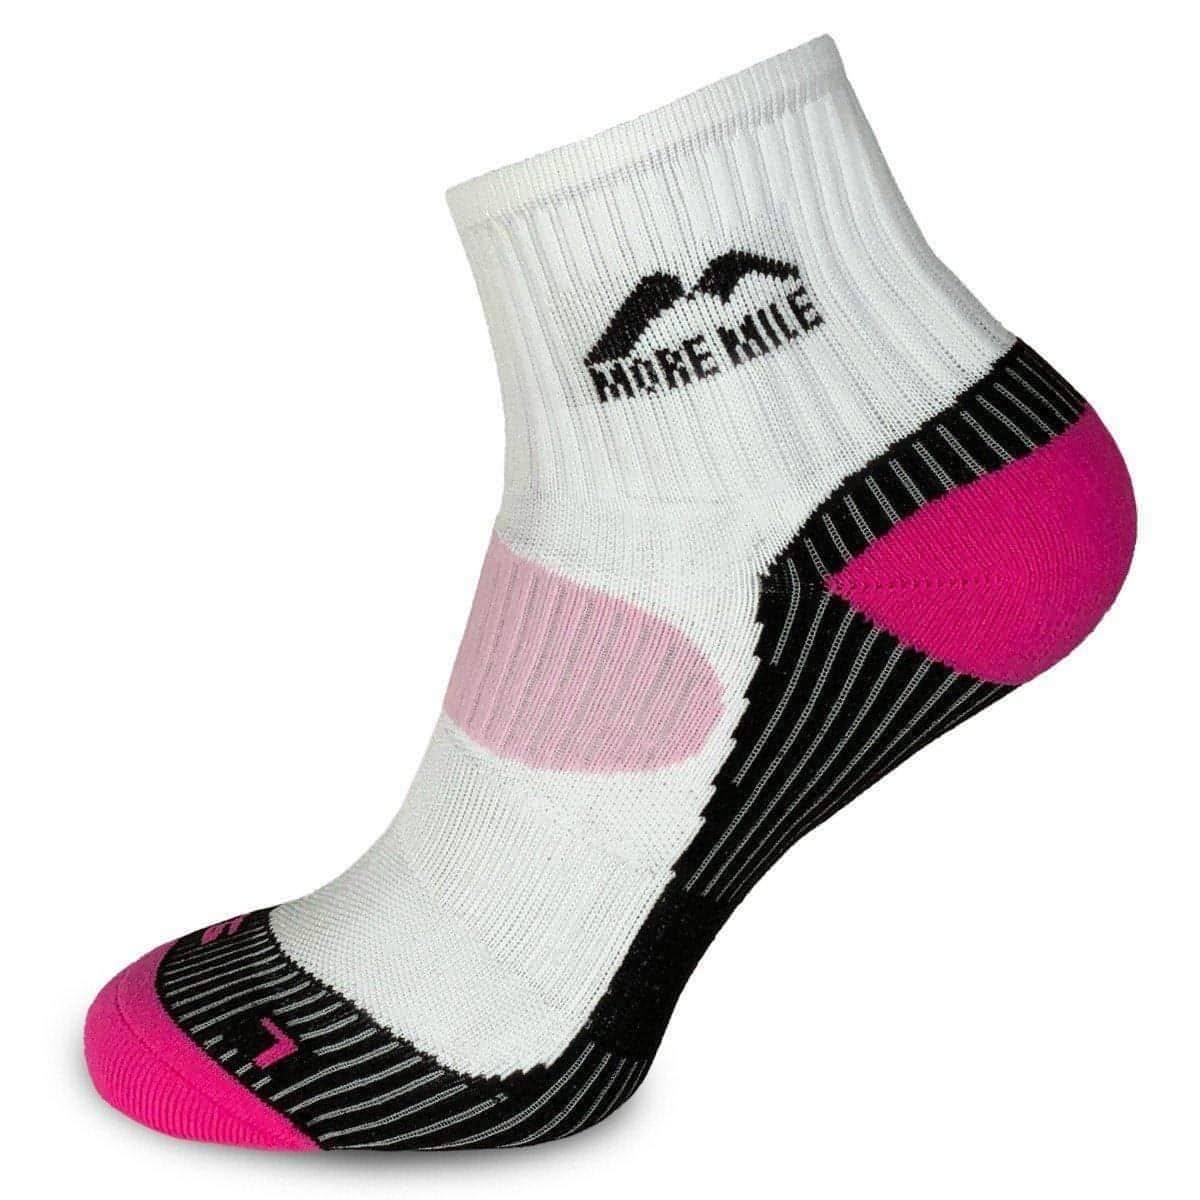 More Mile London Womens Running Socks (Pink) - White - Start Fitness